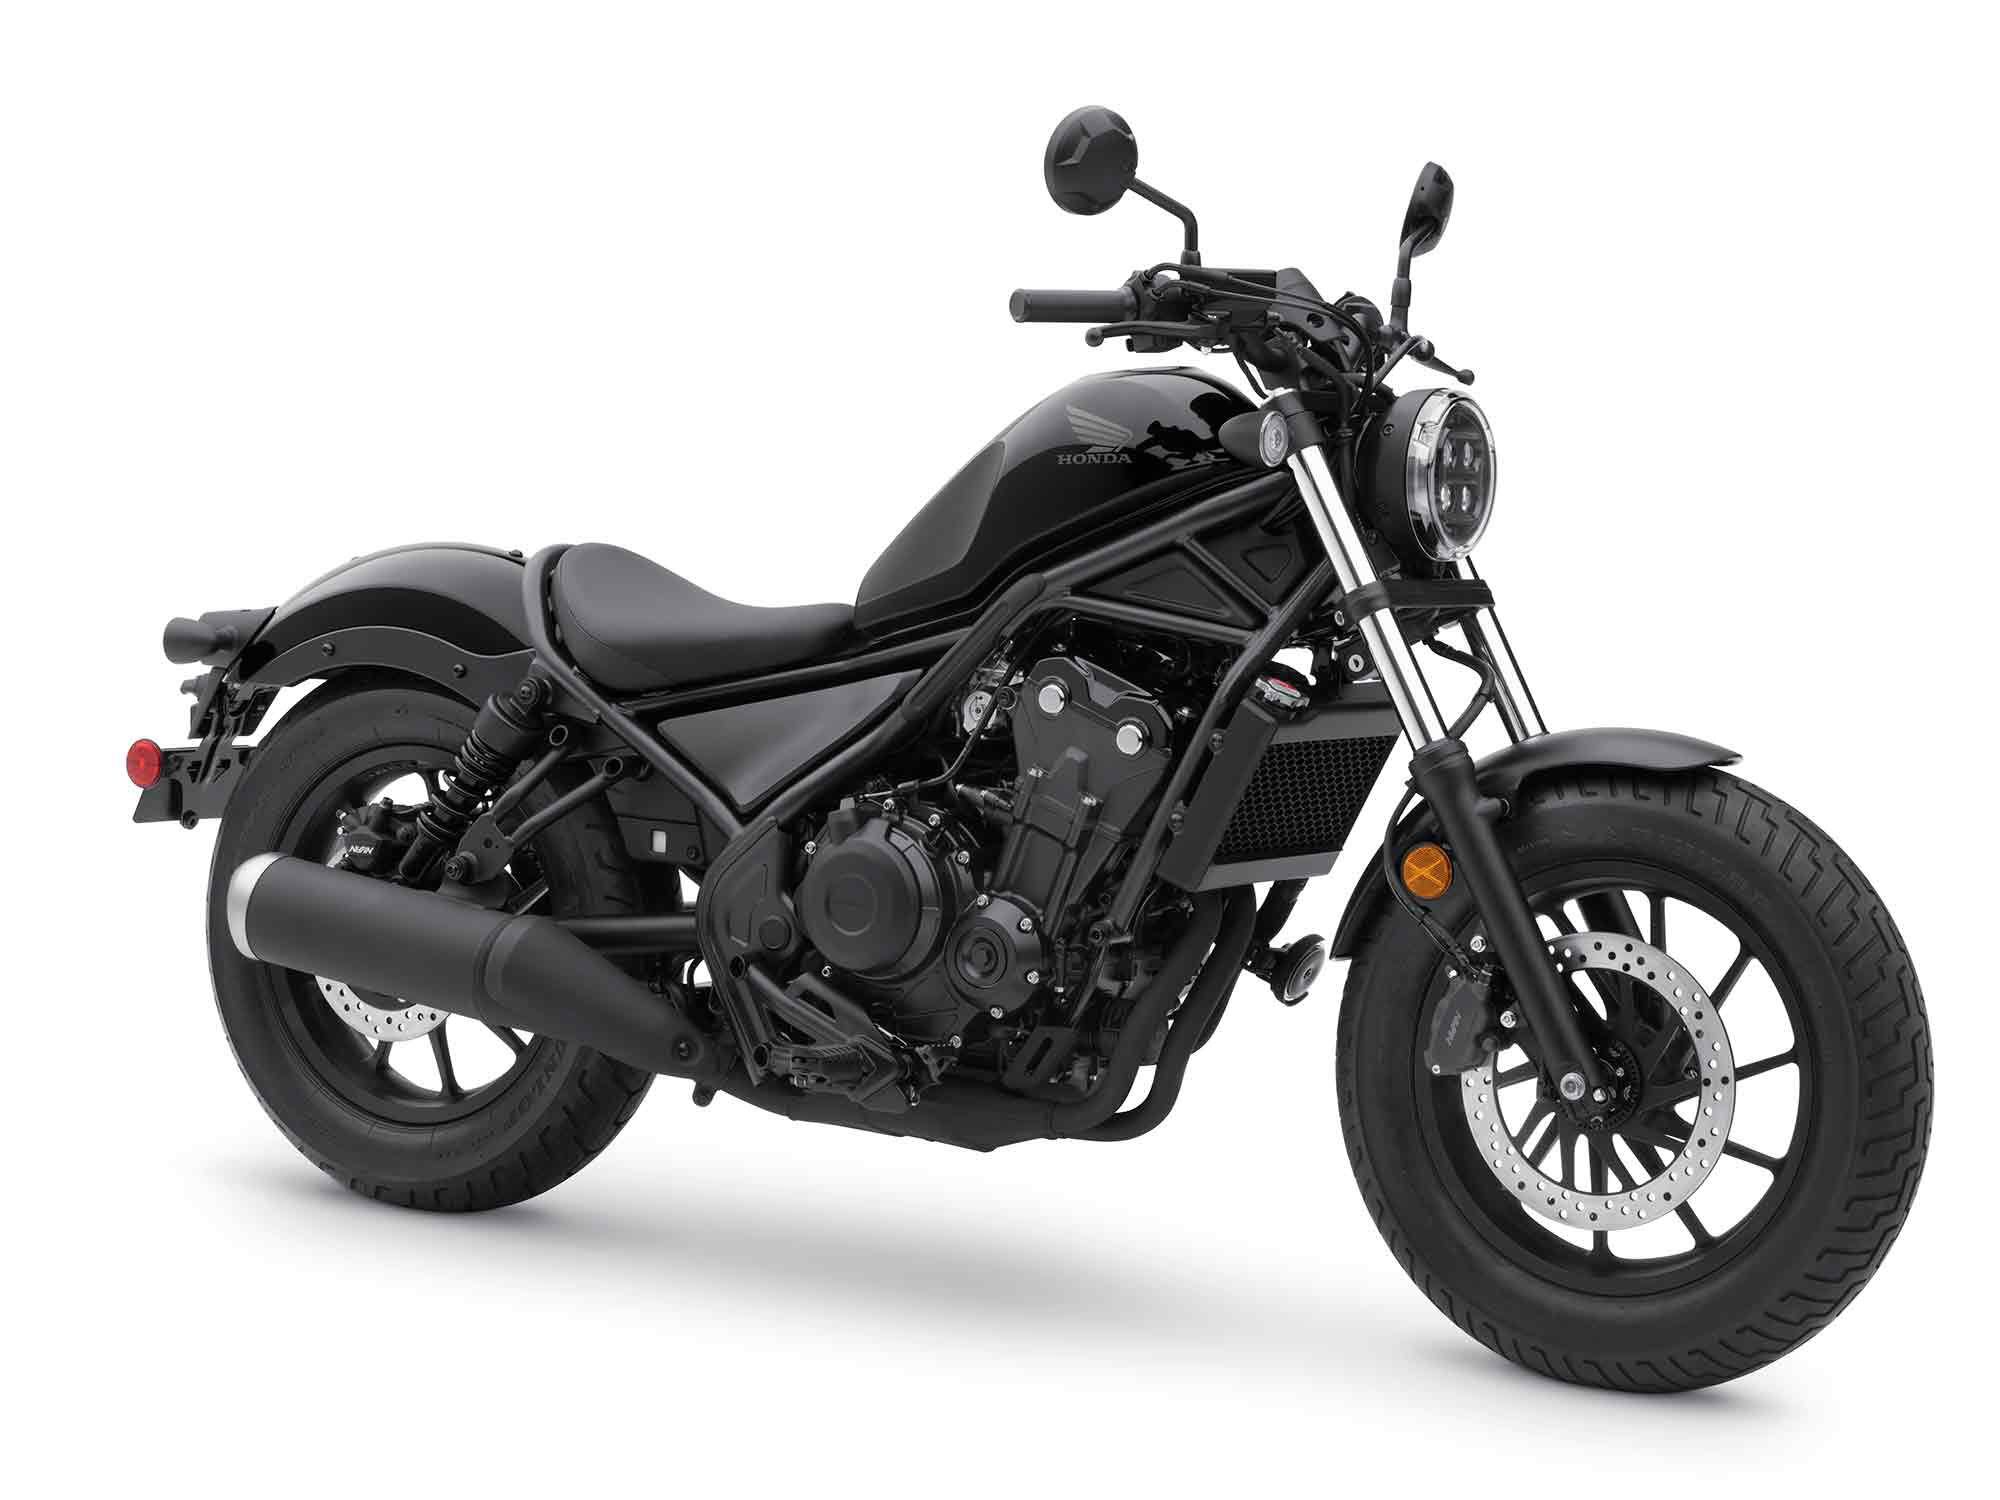 2020 Honda Rebel 500 Motorcycle News